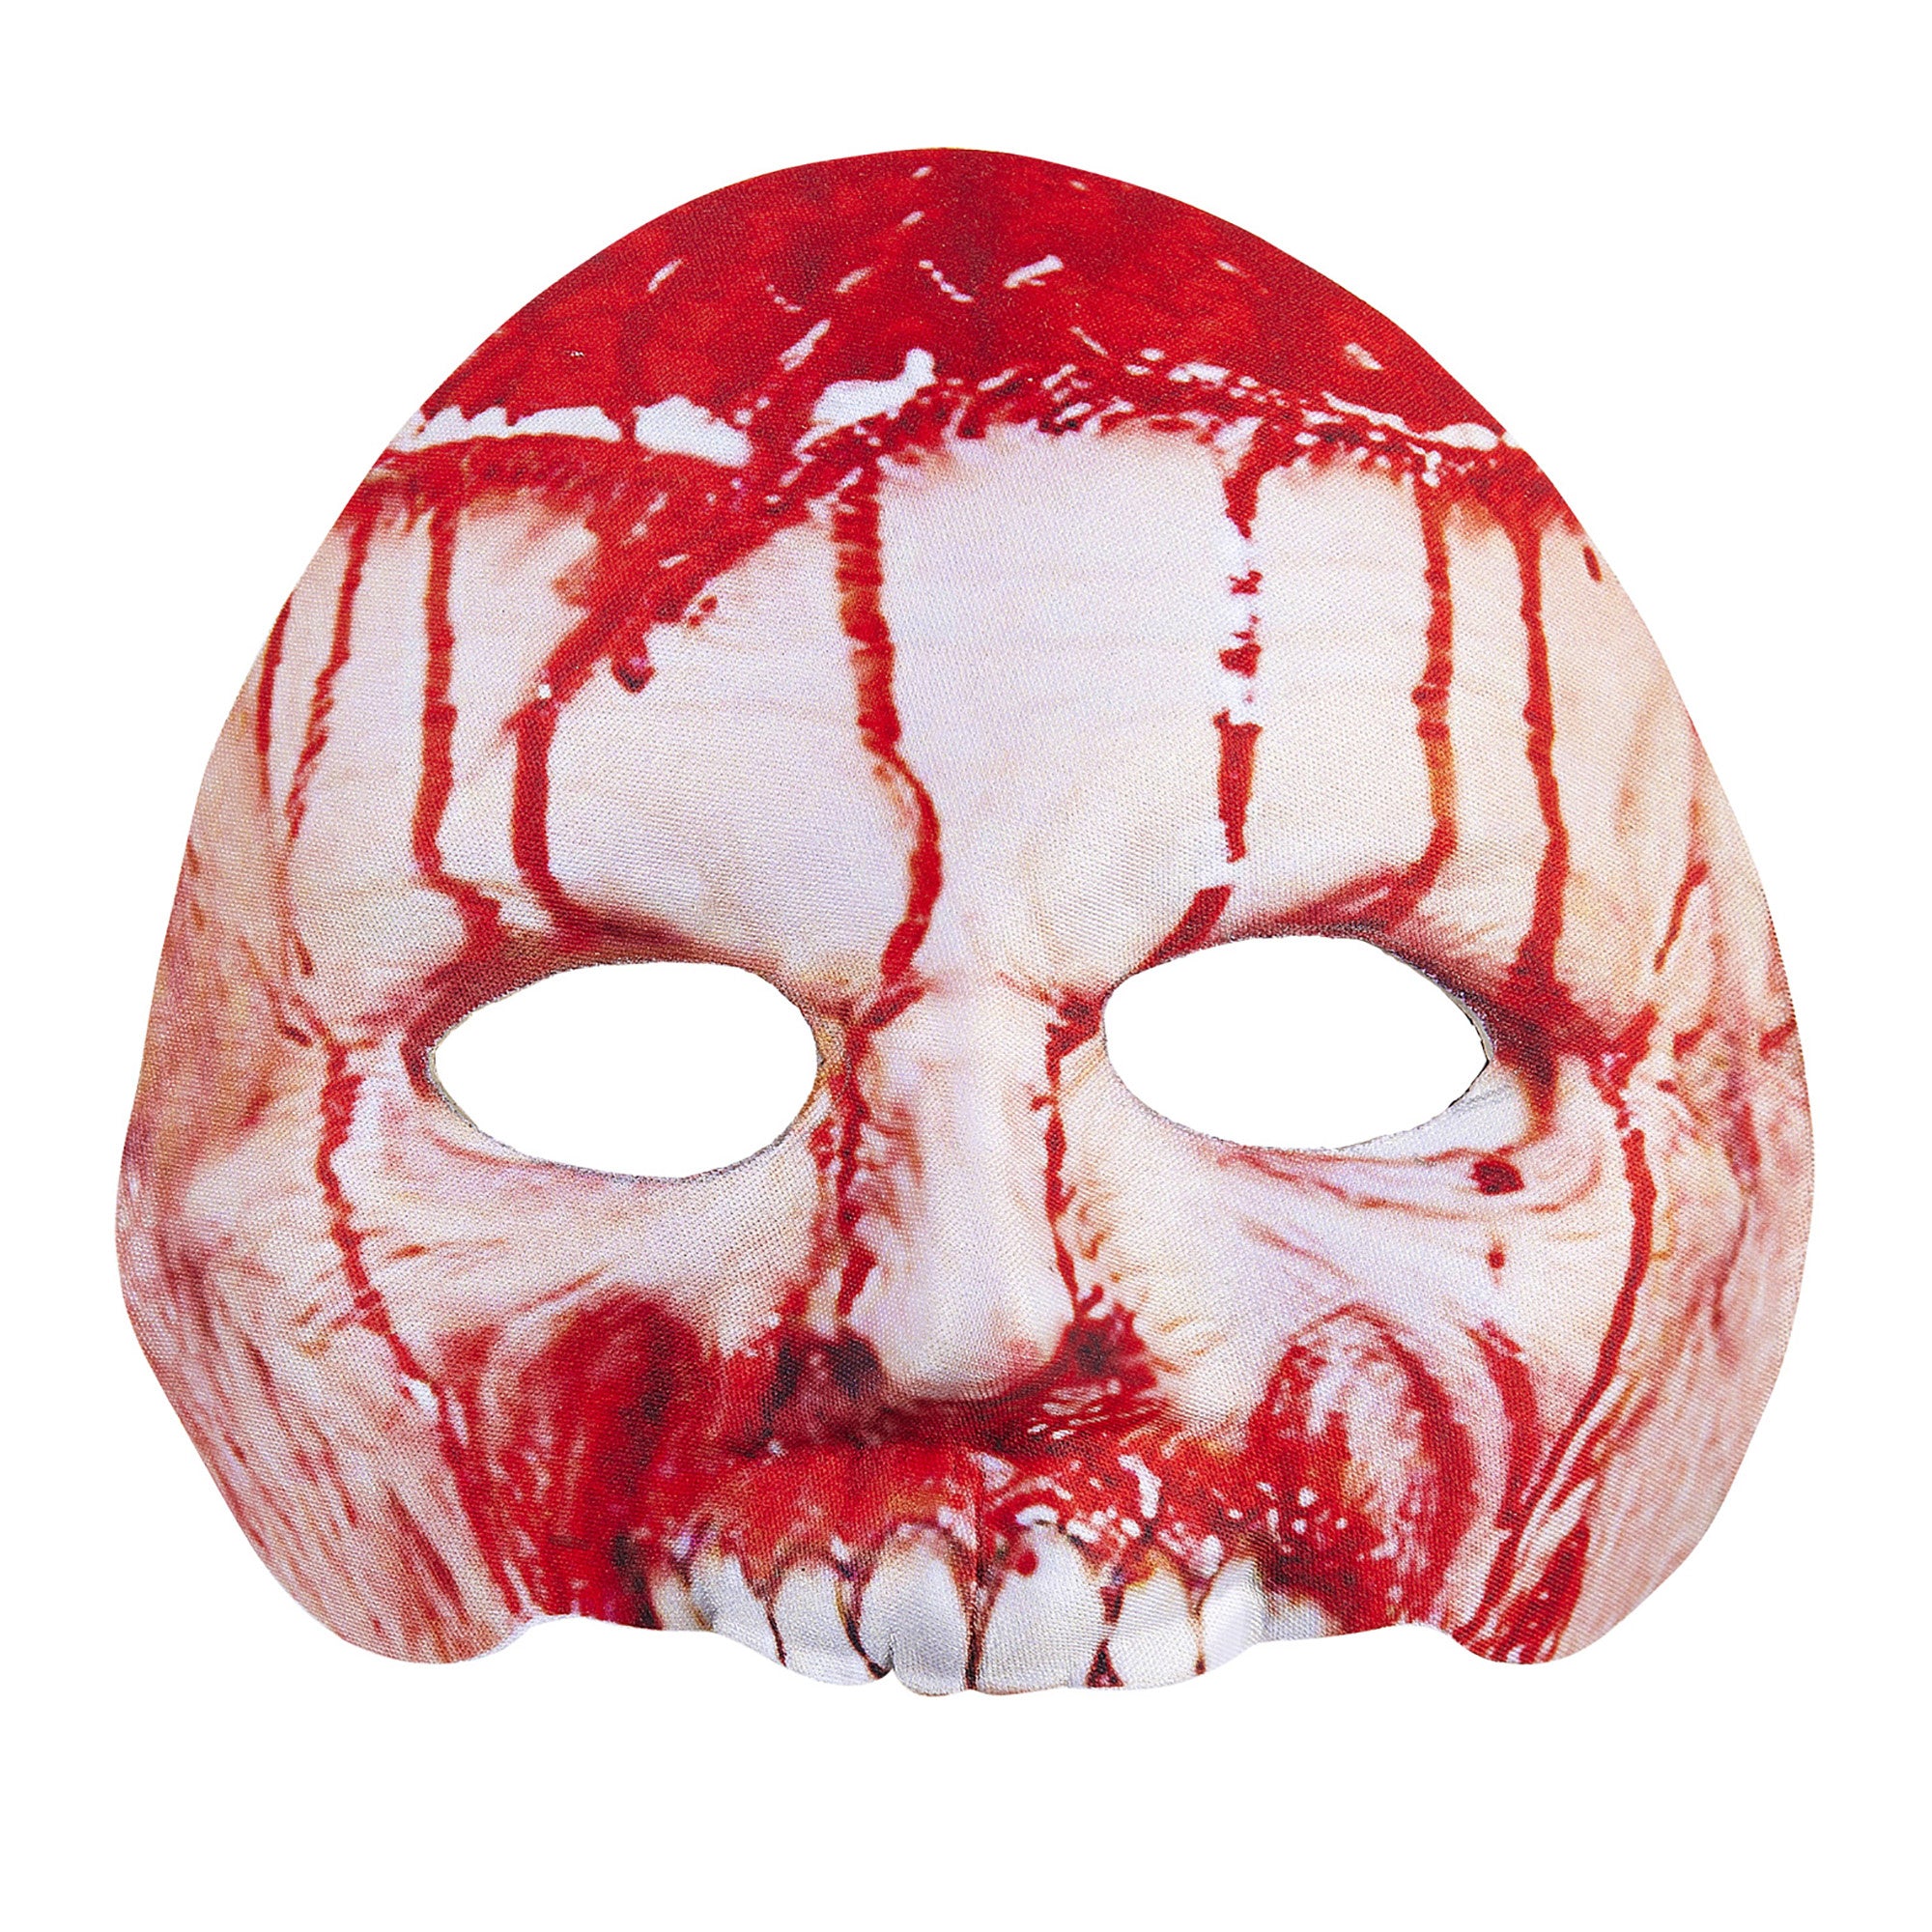 Angstaanjagend Psycho masker met veel bloed voor Halloween